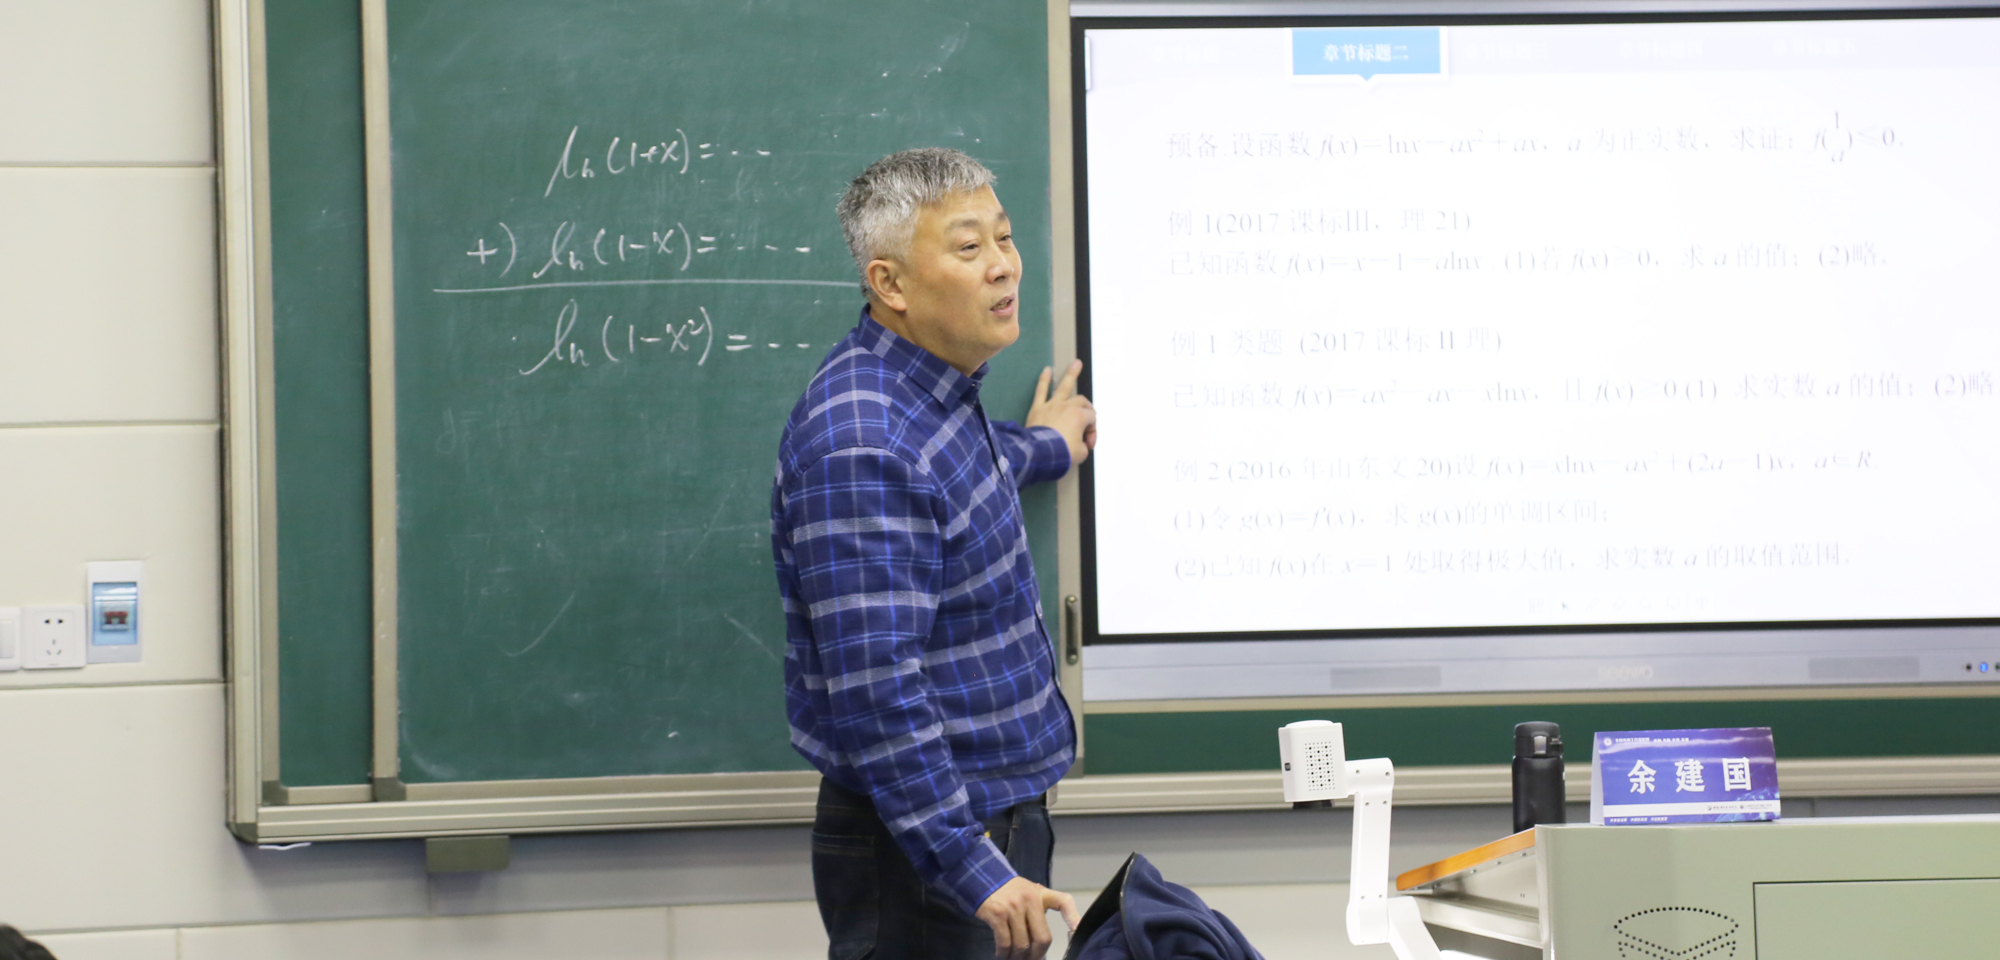 研究院专家、学术指导南京正高级、特级教师余建国的精彩高中数学示范课堂和教研活动受到好评。